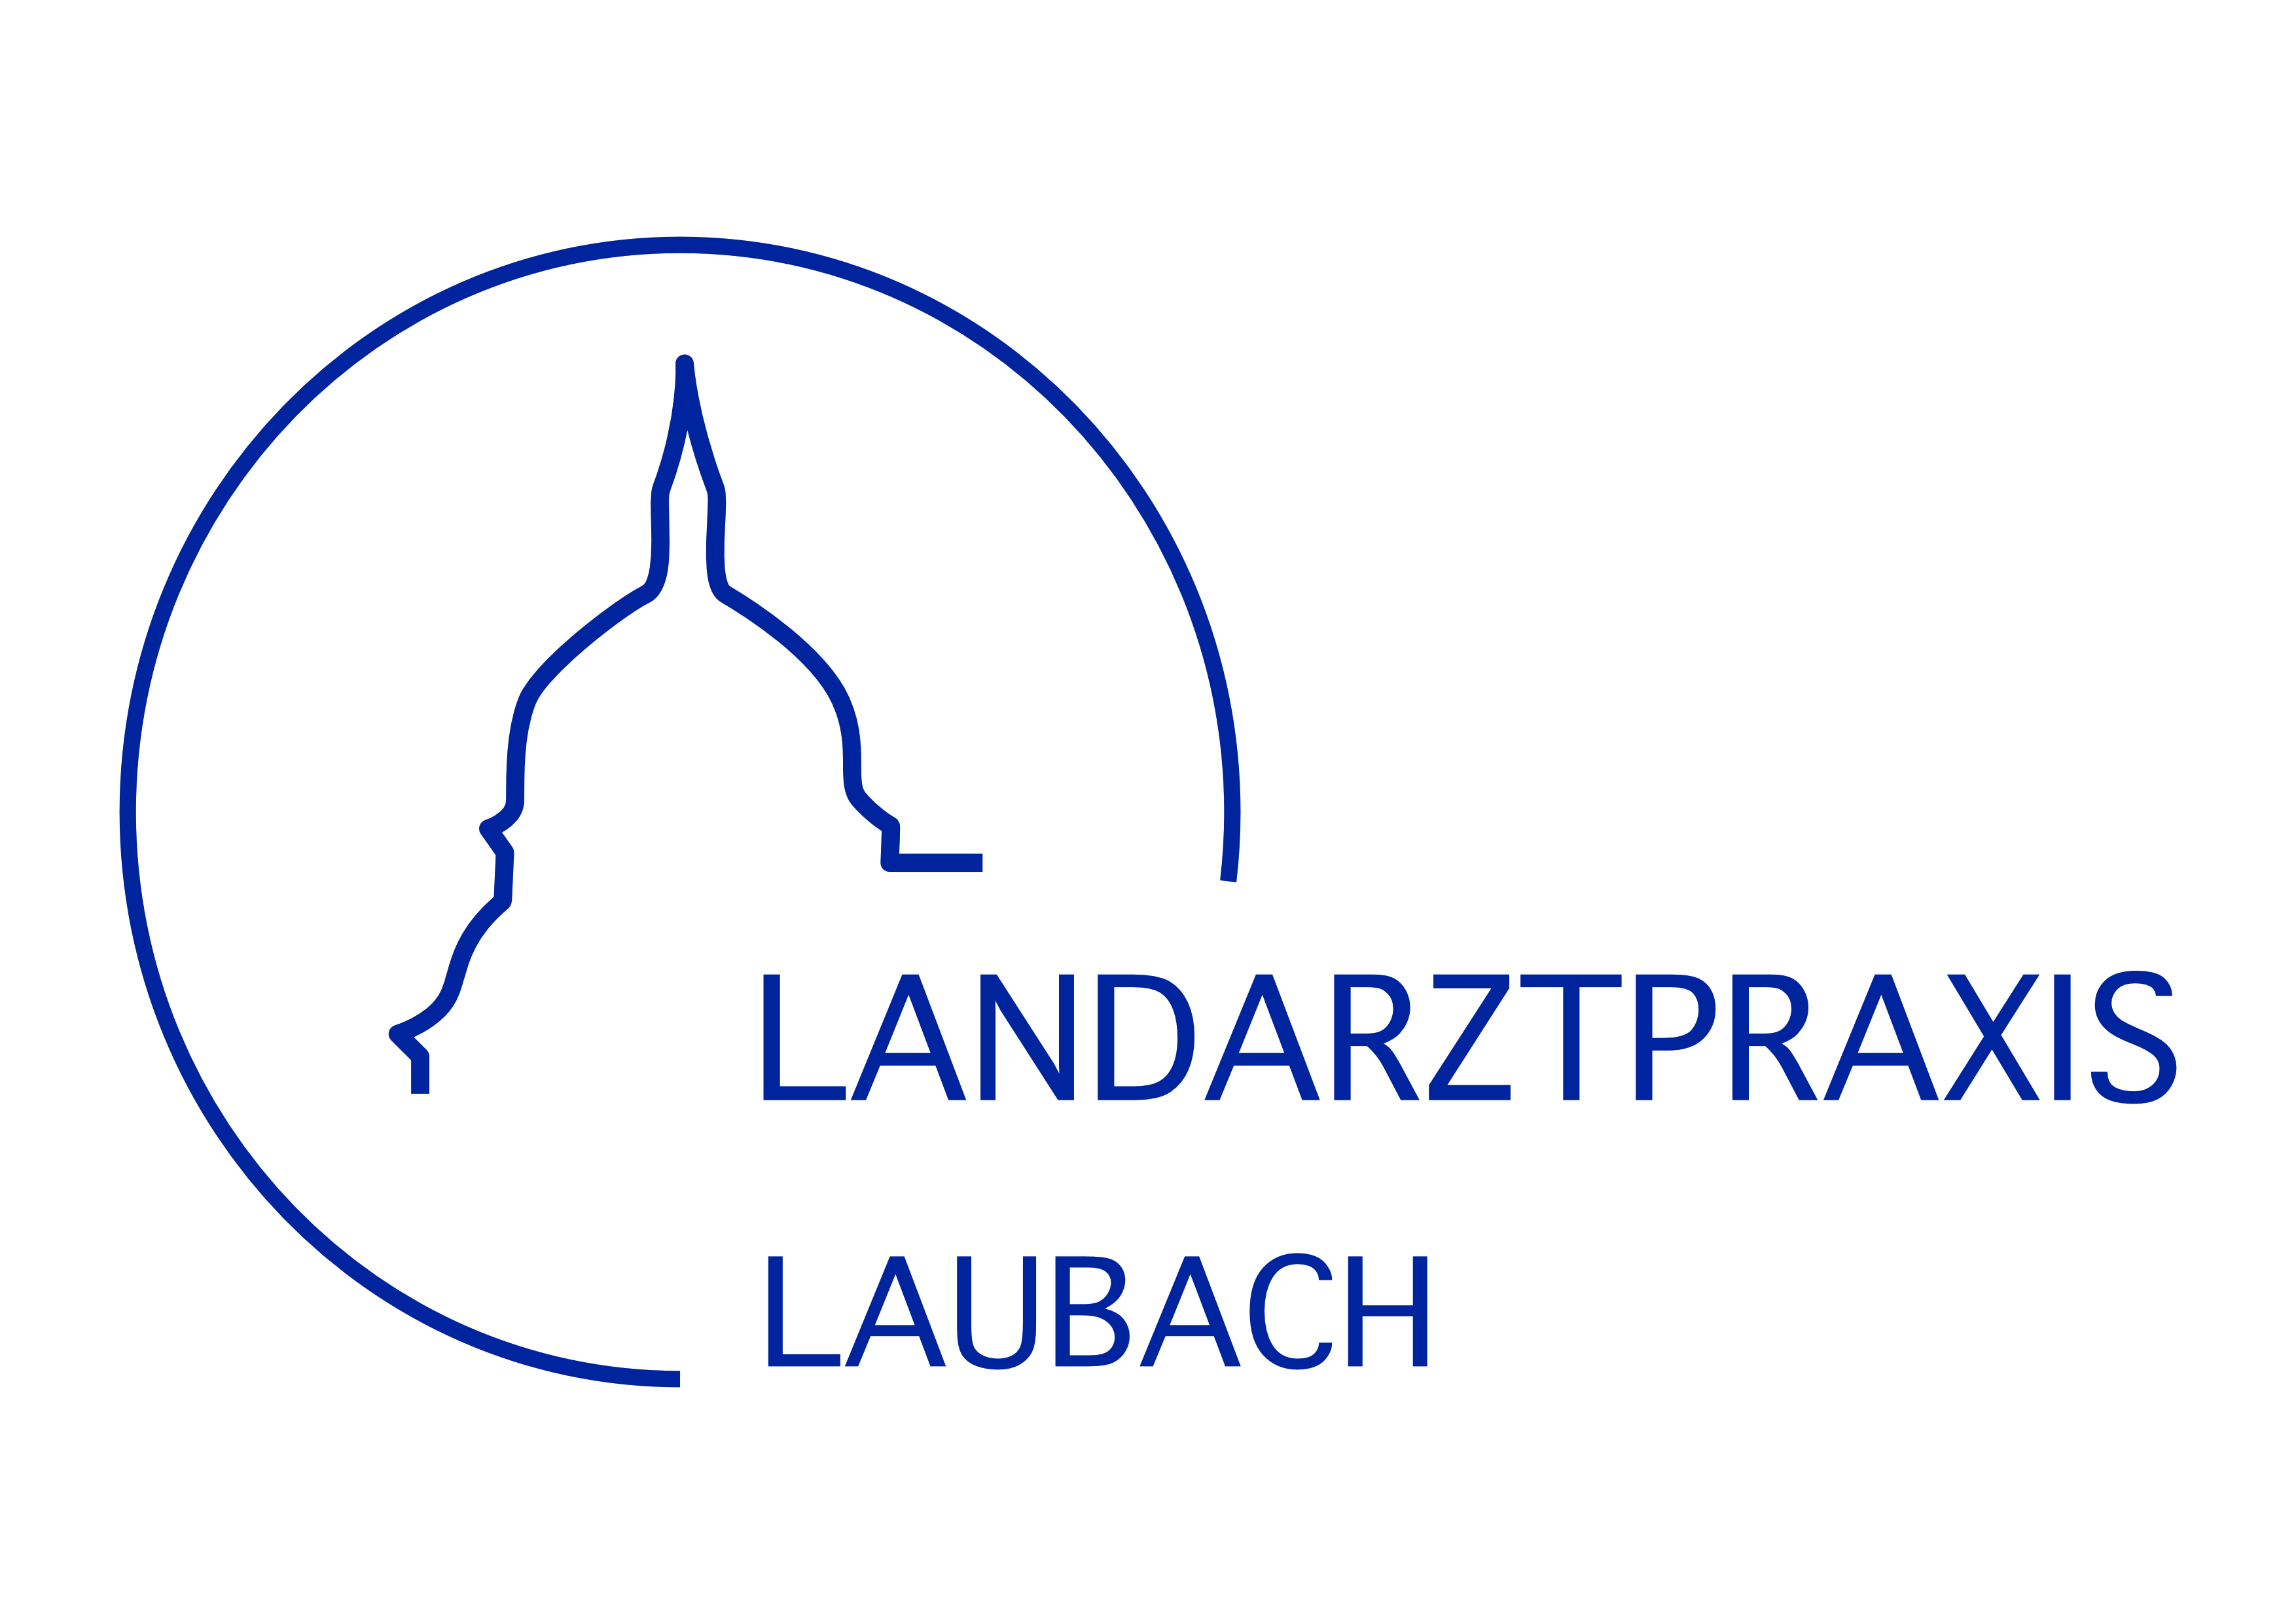 (c) Landarztpraxis-laubach.com